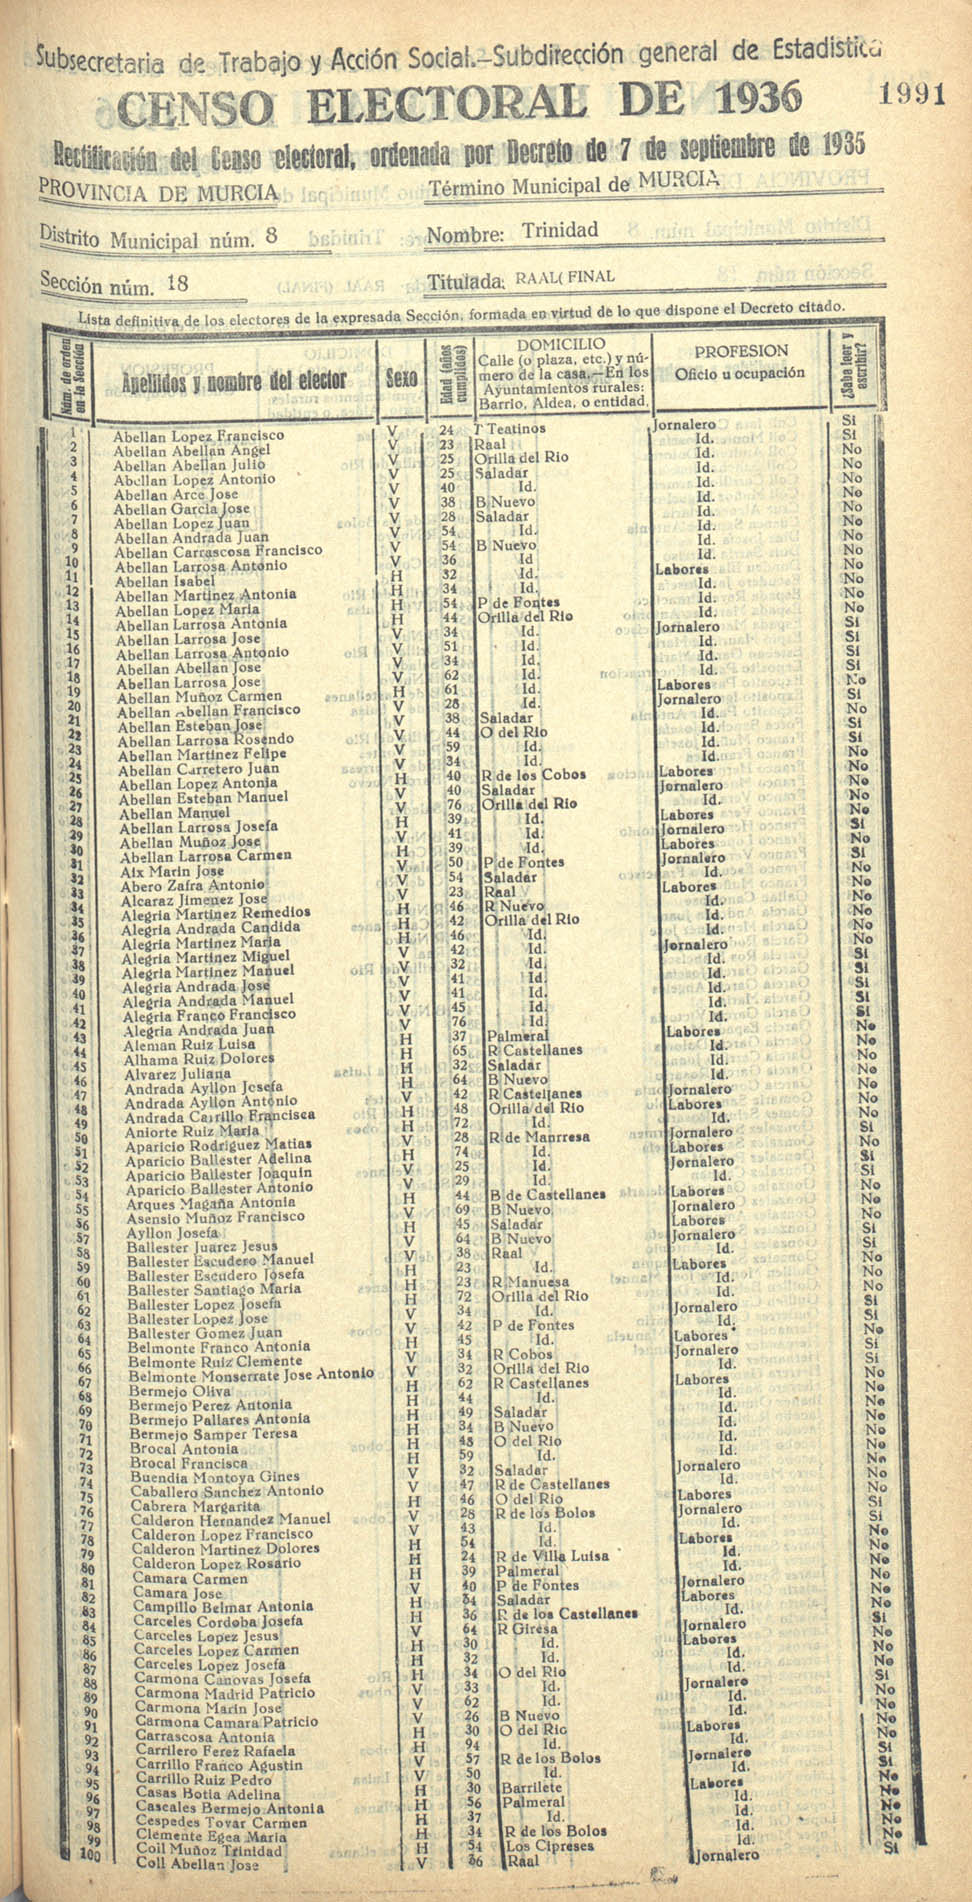 Censo electoral provincial de 1936. Murcia. Distrito 8º, Trinidad. Sección 18ª, Raal (final)